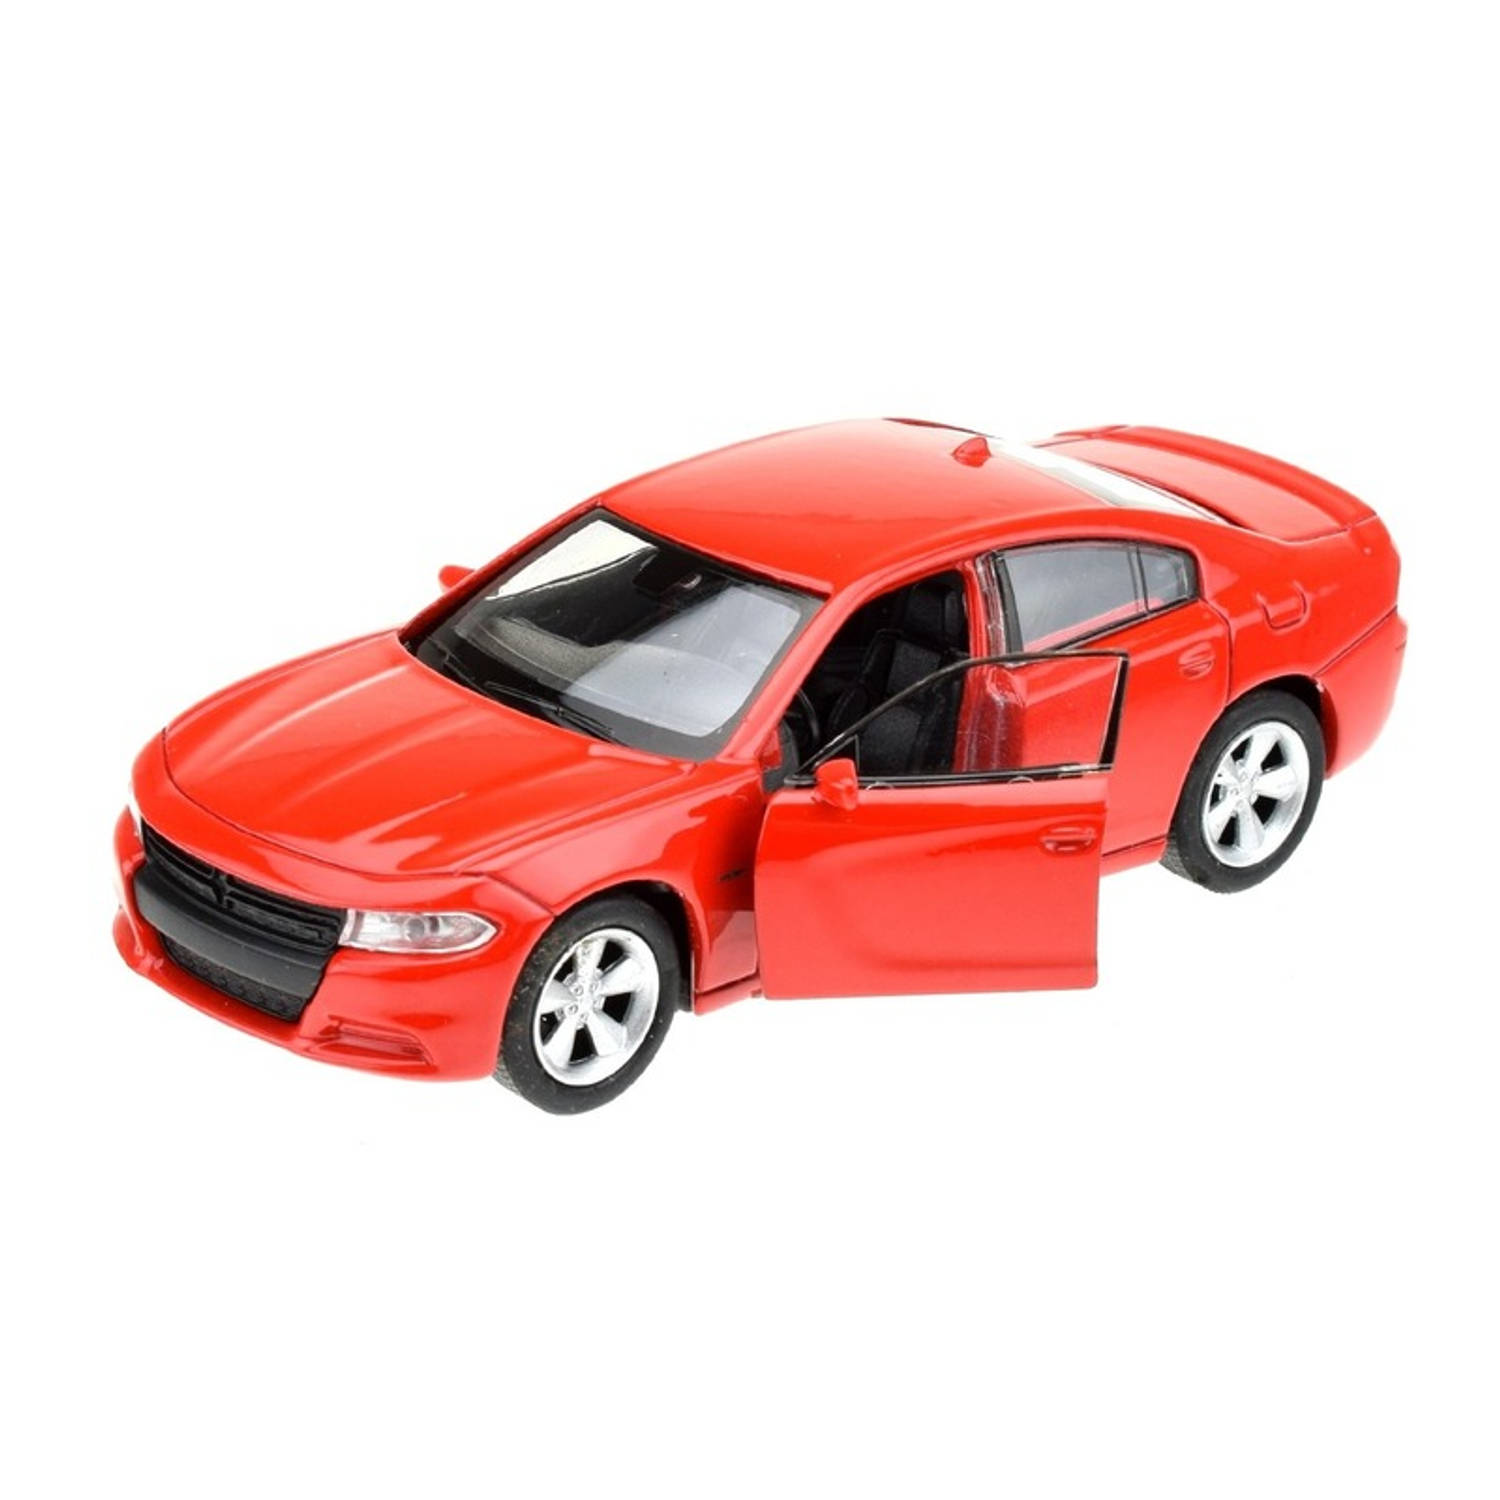 Speelgoedauto Dodge Charger 2016 rood 1:34 - Speelgoed auto's